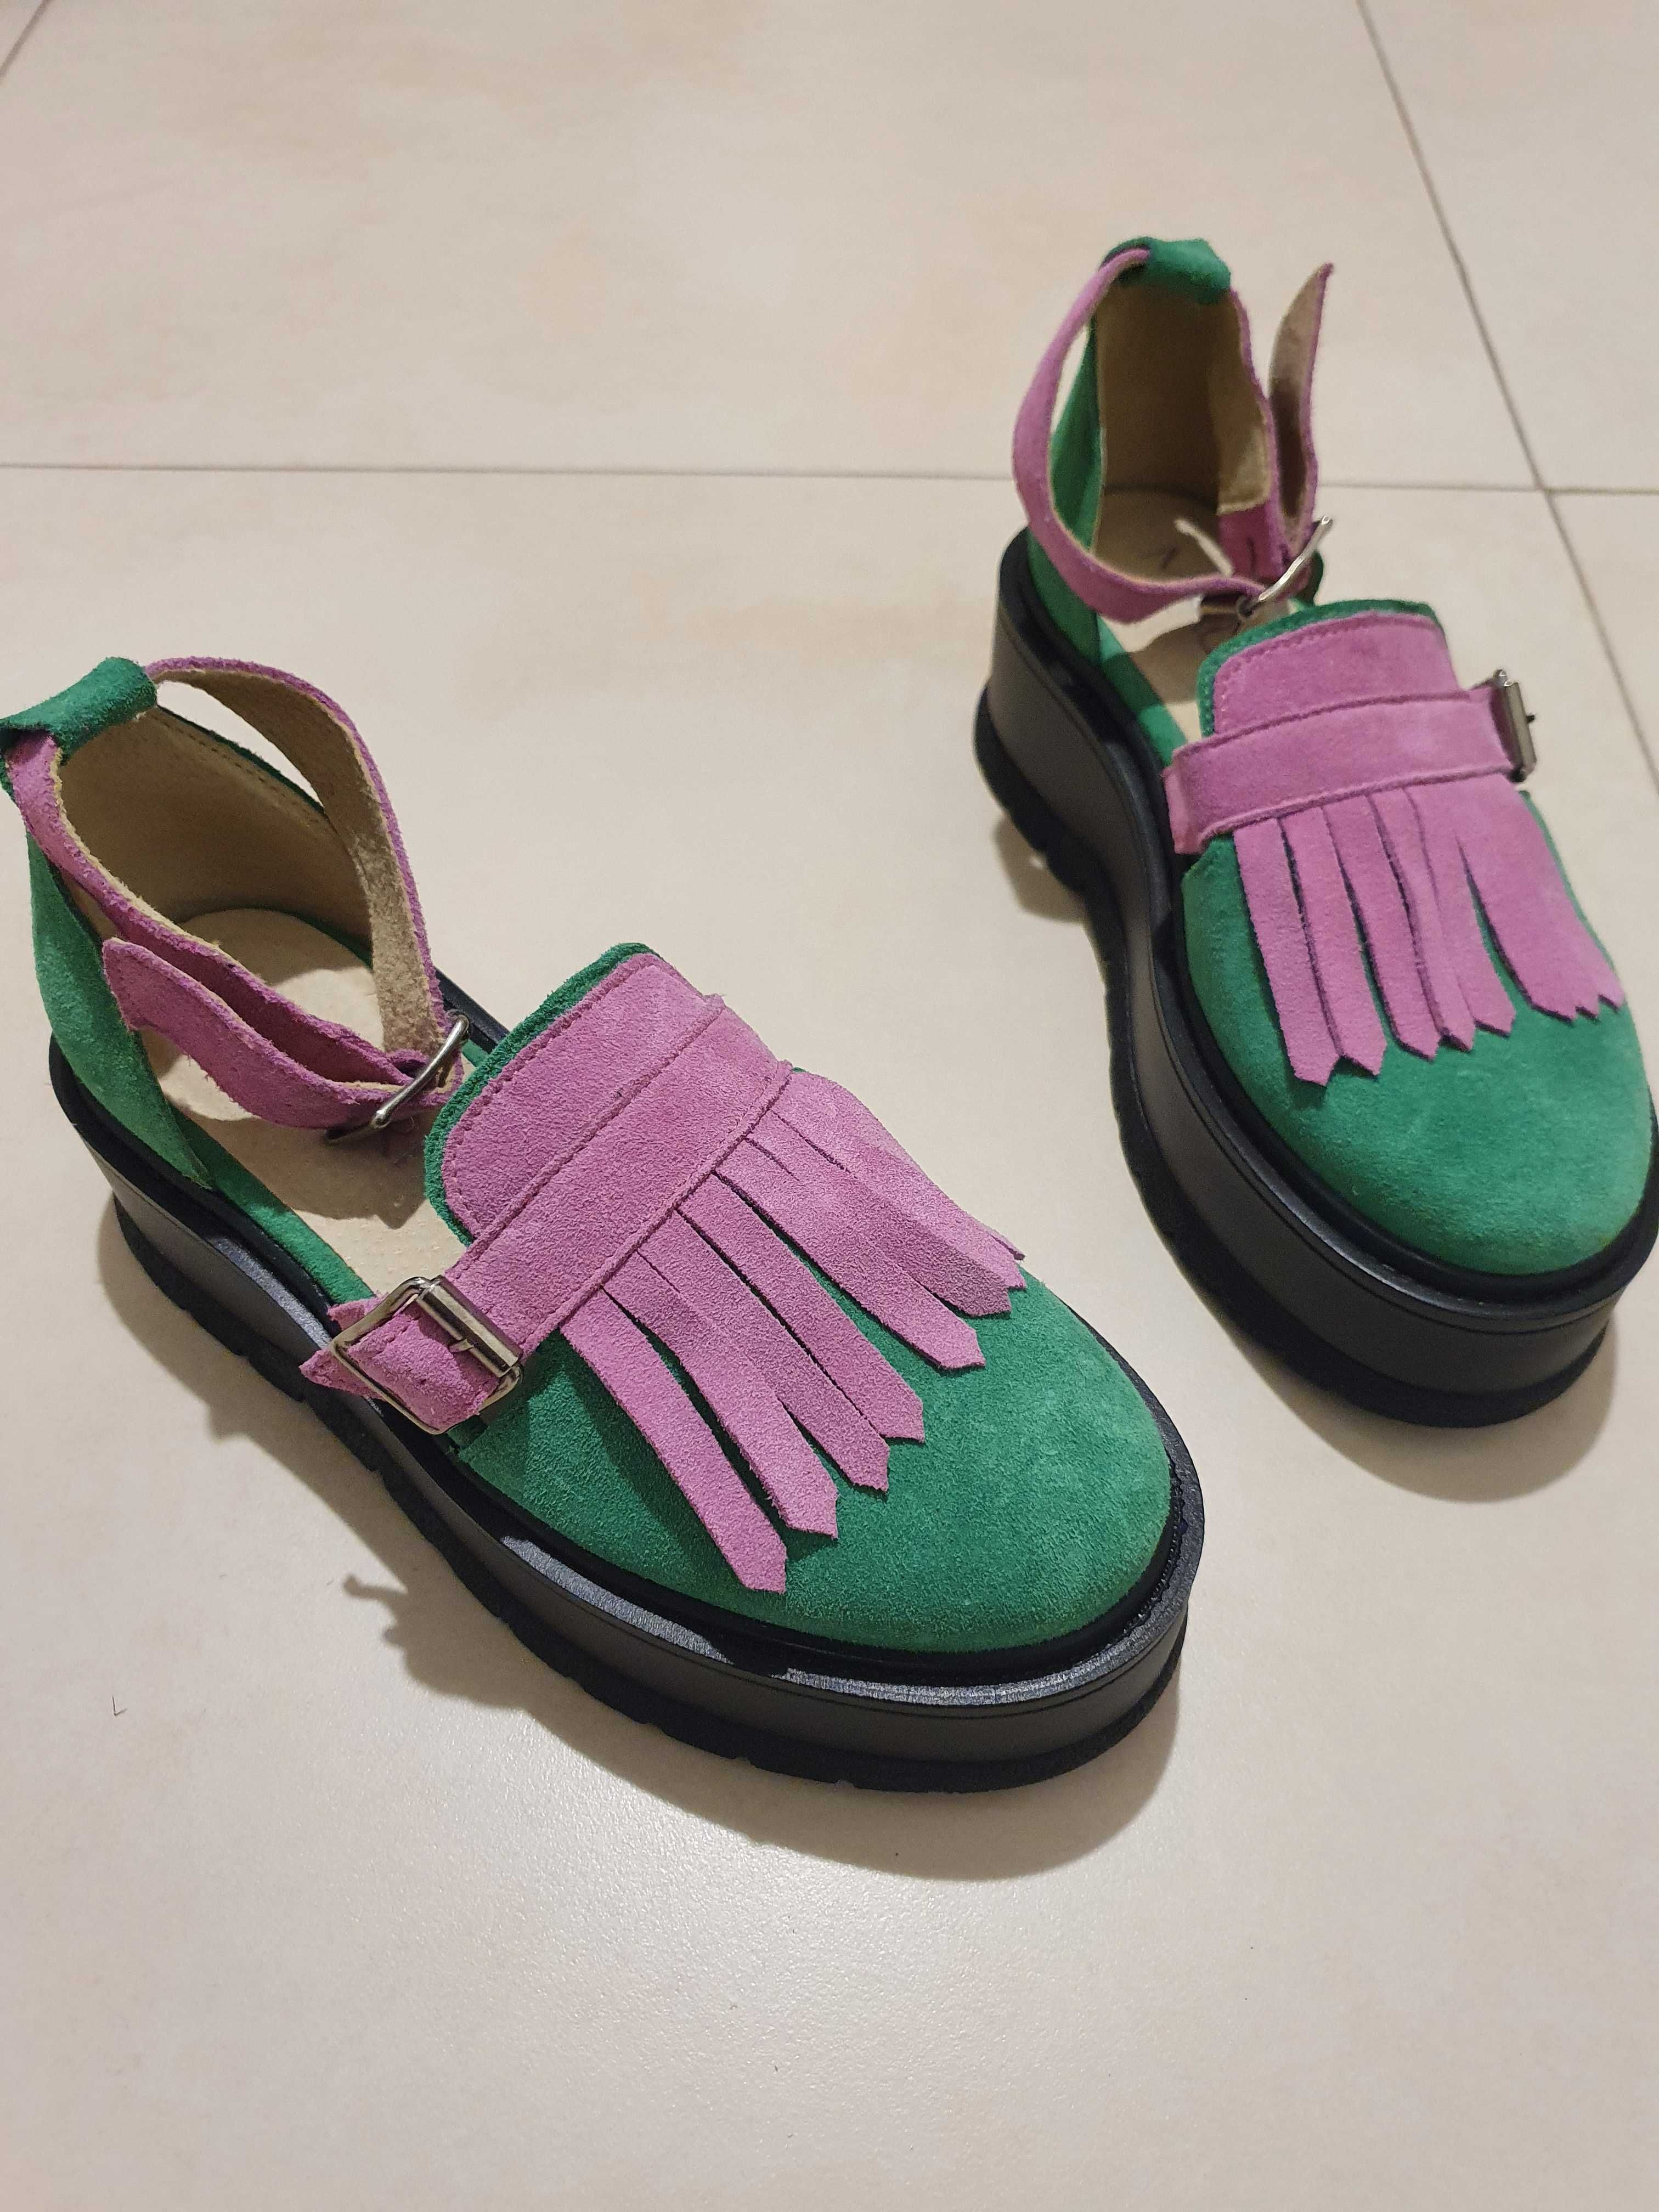 Pantofi Nora Green&Purple
Mauri